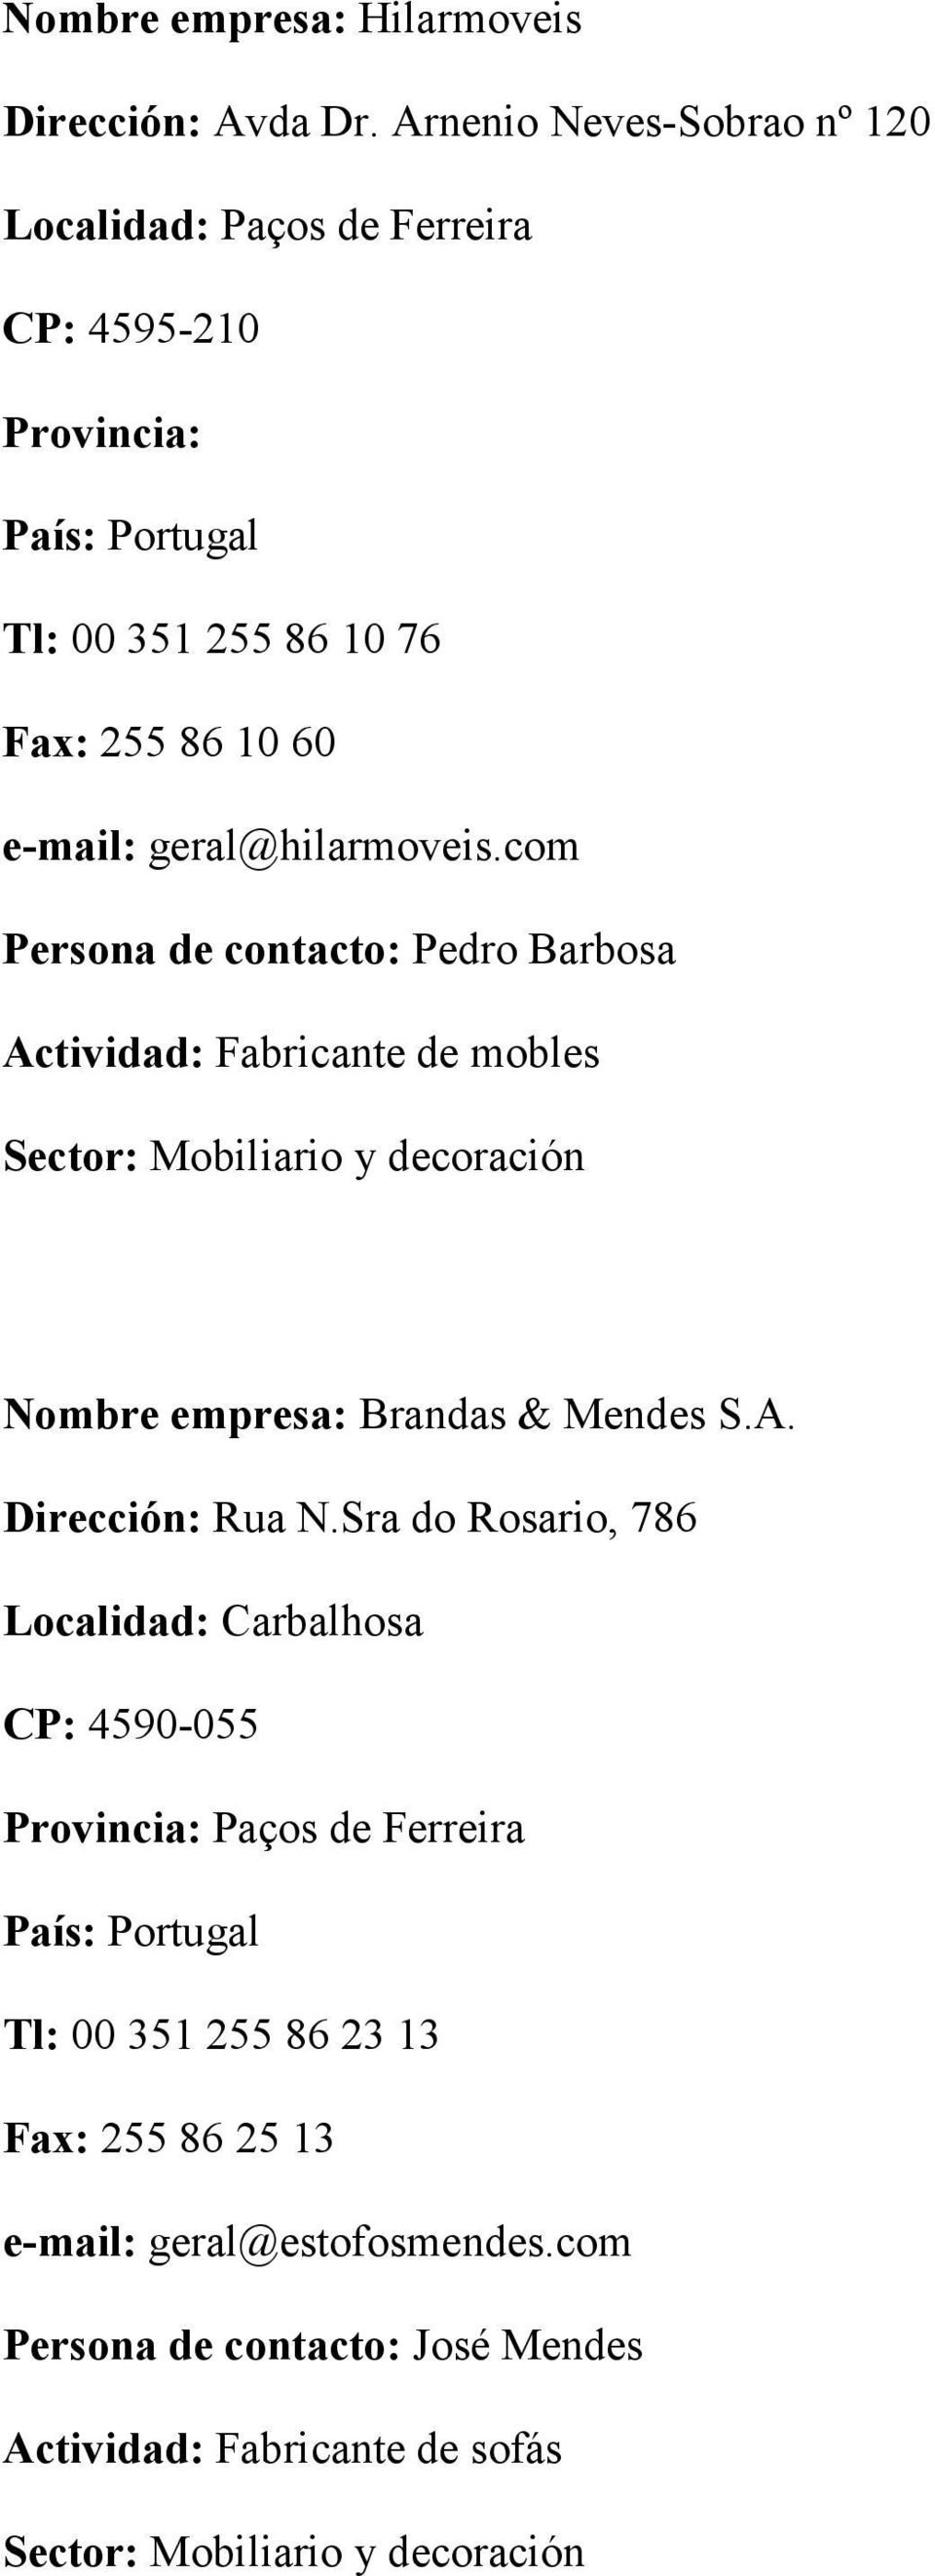 geral@hilarmoveis.com Persona de contacto: Pedro Barbosa Actividad: Fabricante de mobles Nombre empresa: Brandas & Mendes S.A. Dirección: Rua N.